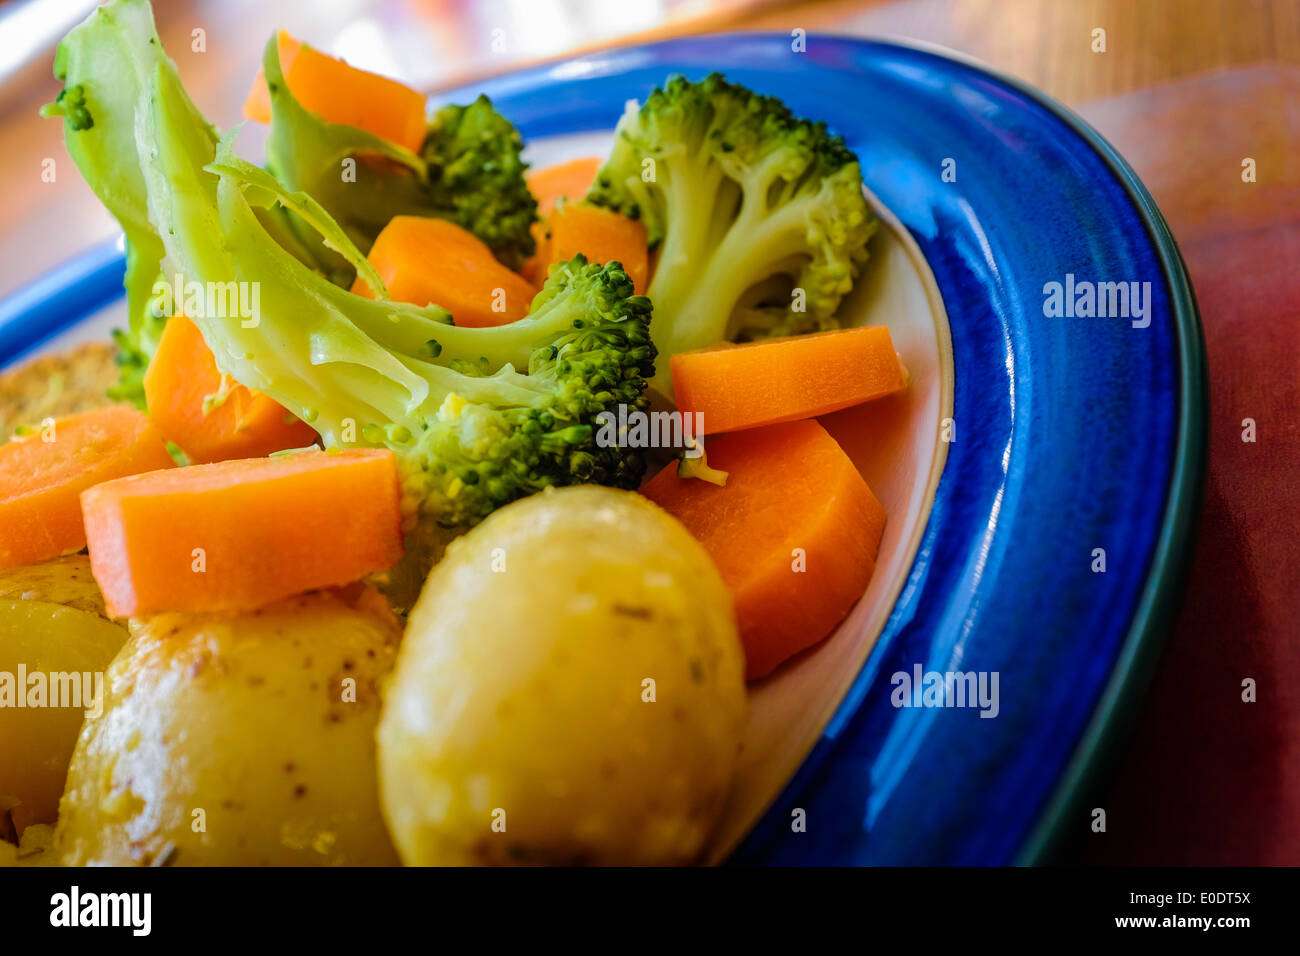 Le brocoli, les carottes en rondelles et les pommes de terre sur une plaque bleue. Close up close-up closeup nourriture saine alimentation légumes légumes Banque D'Images